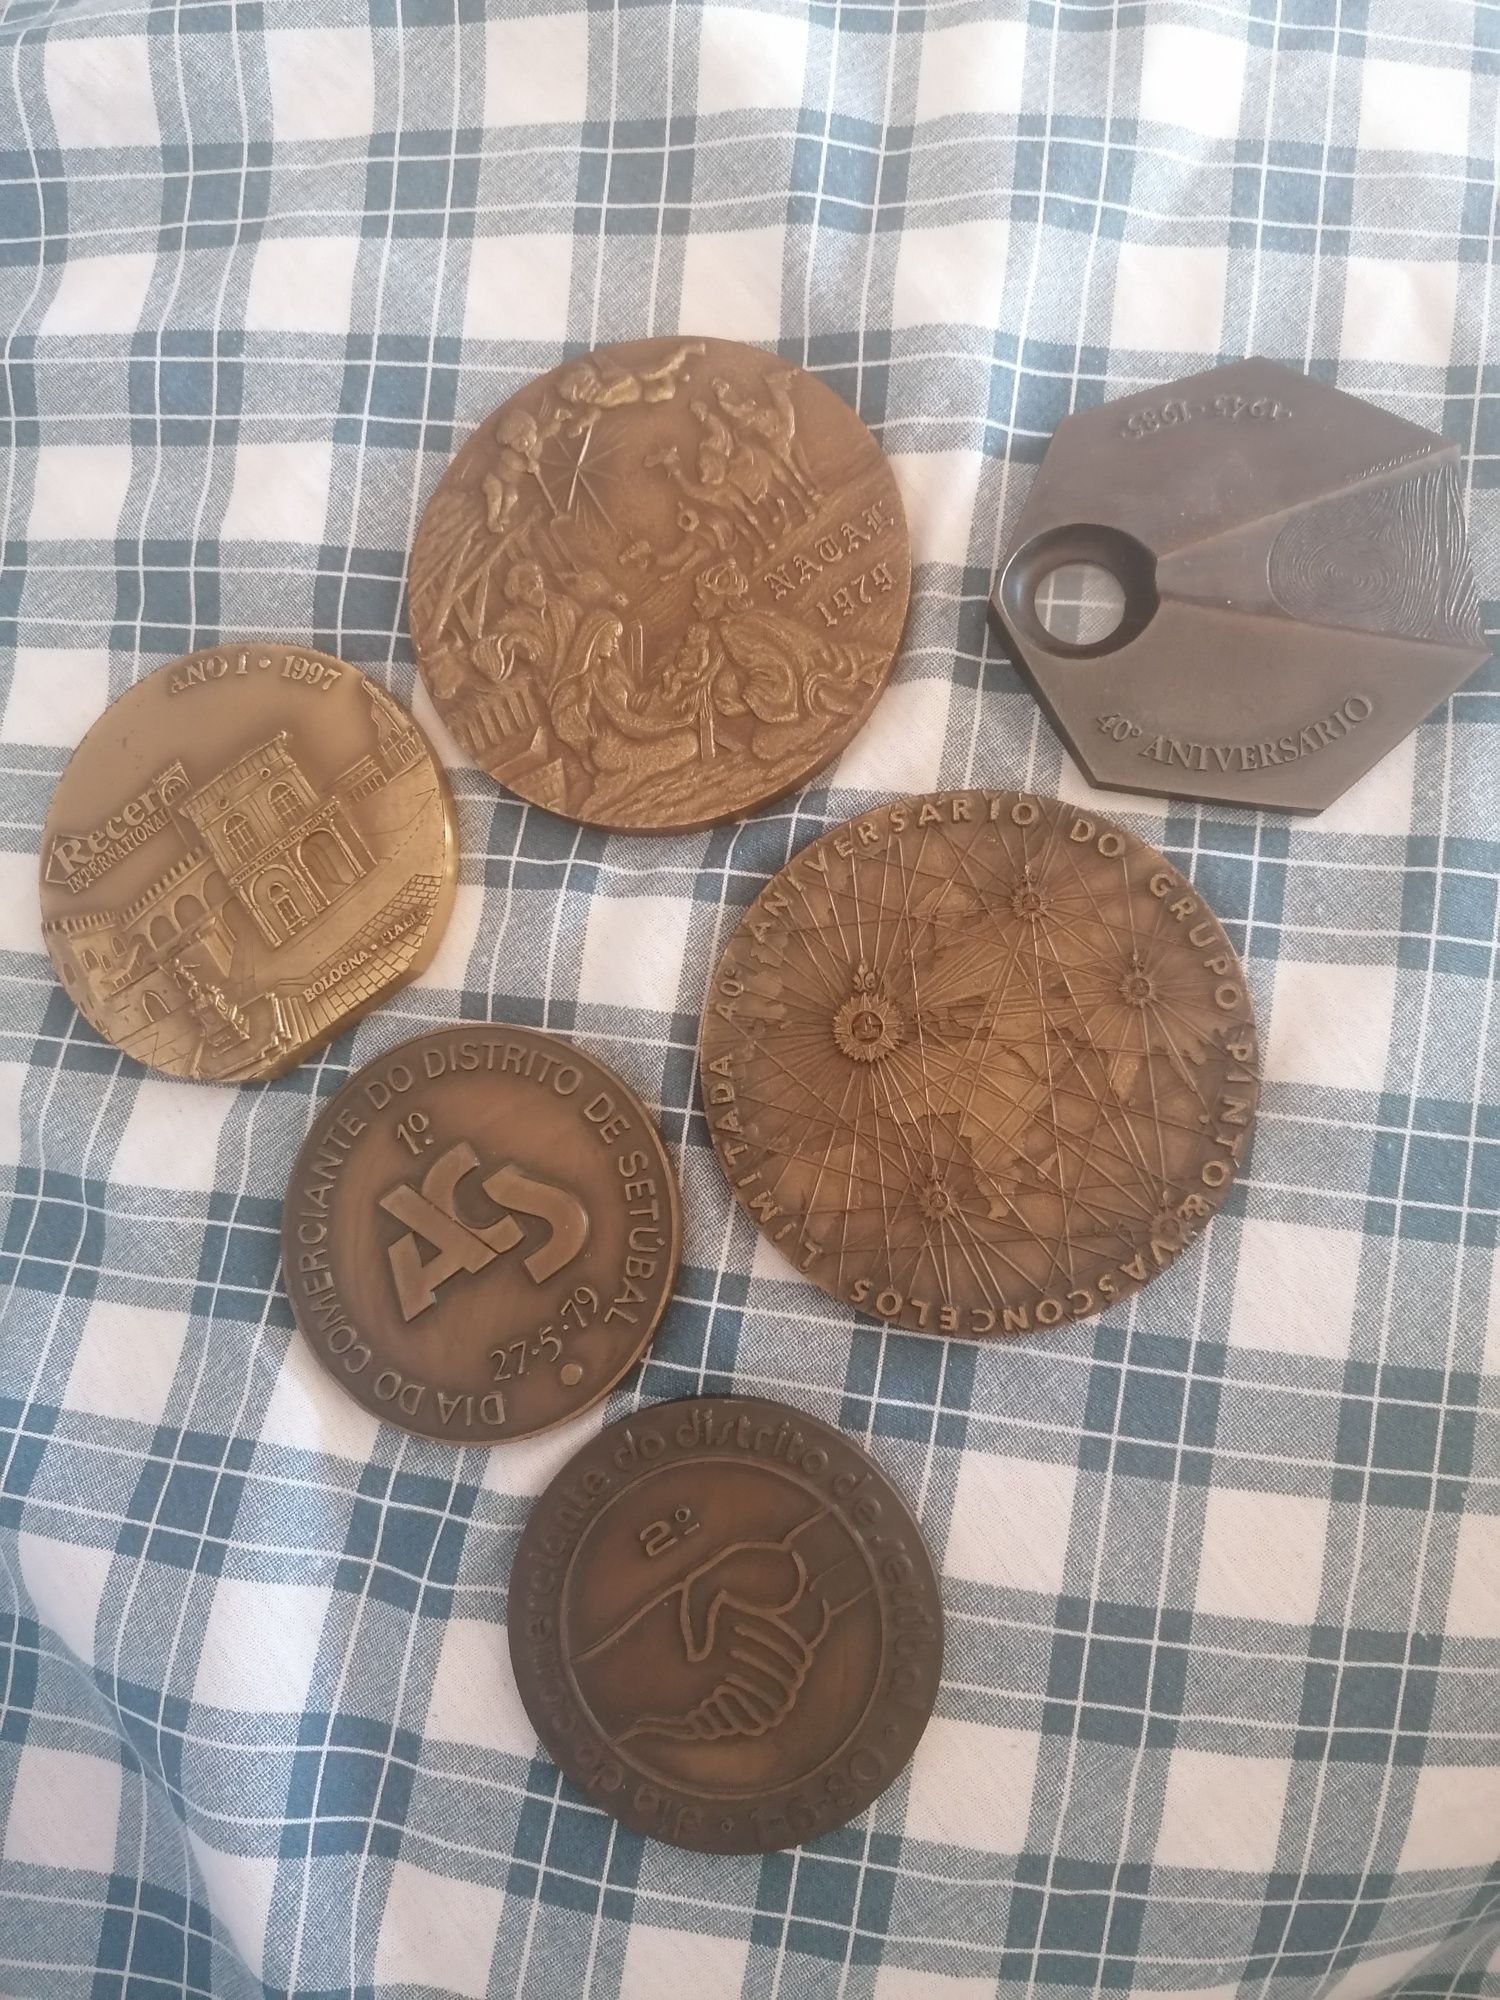 7 Medalhas comemorativas em bronze